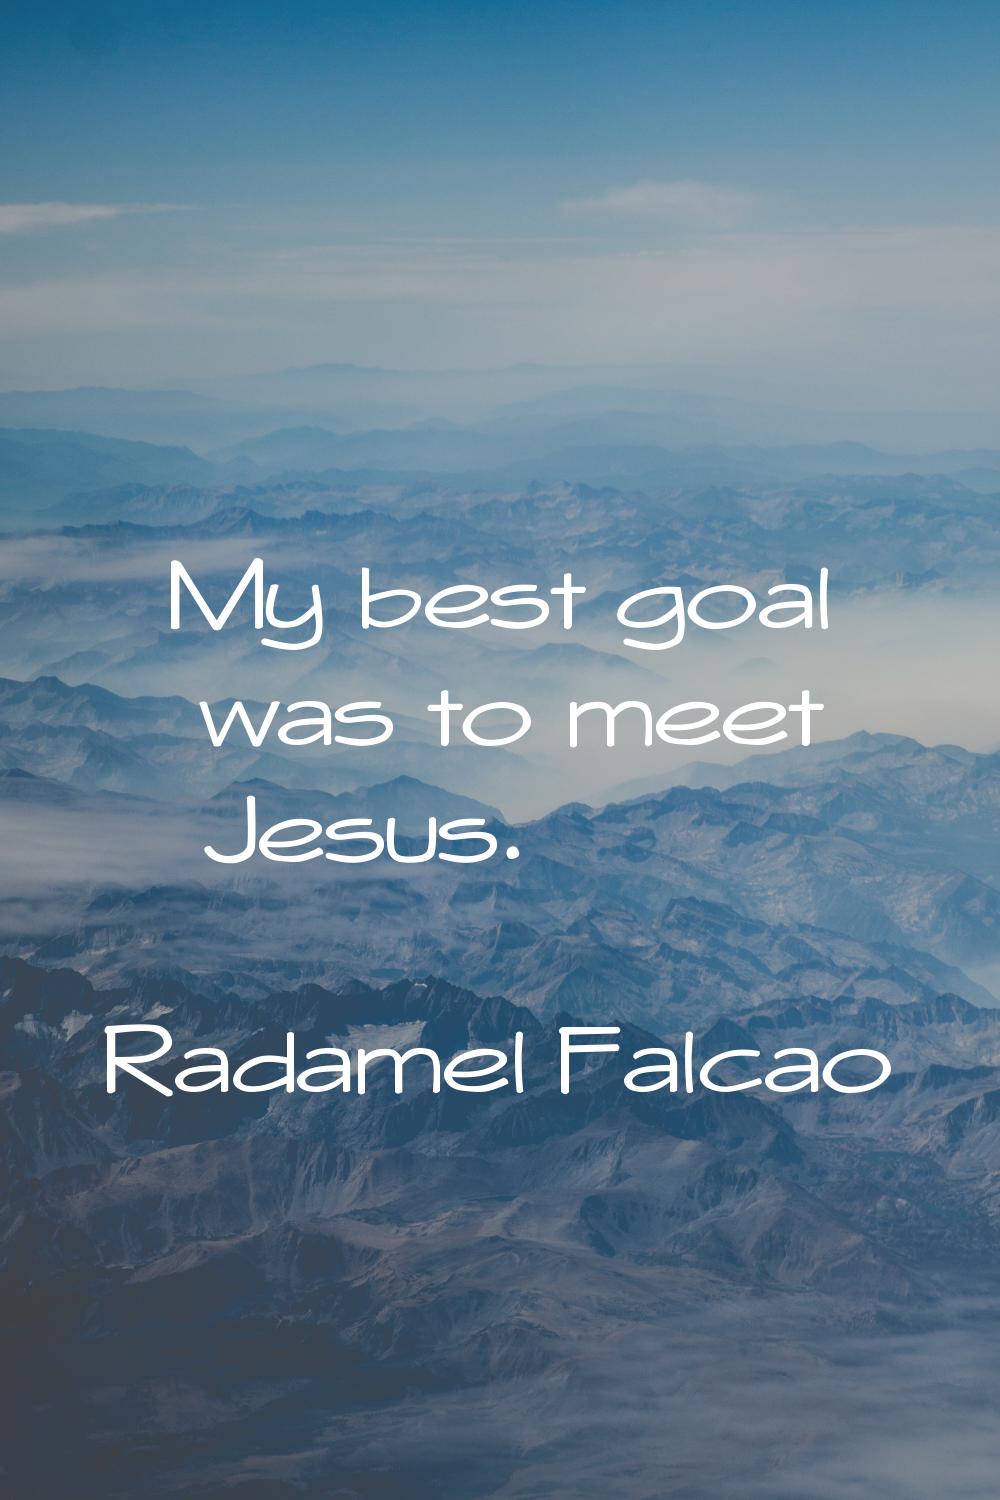 My best goal was to meet Jesus.